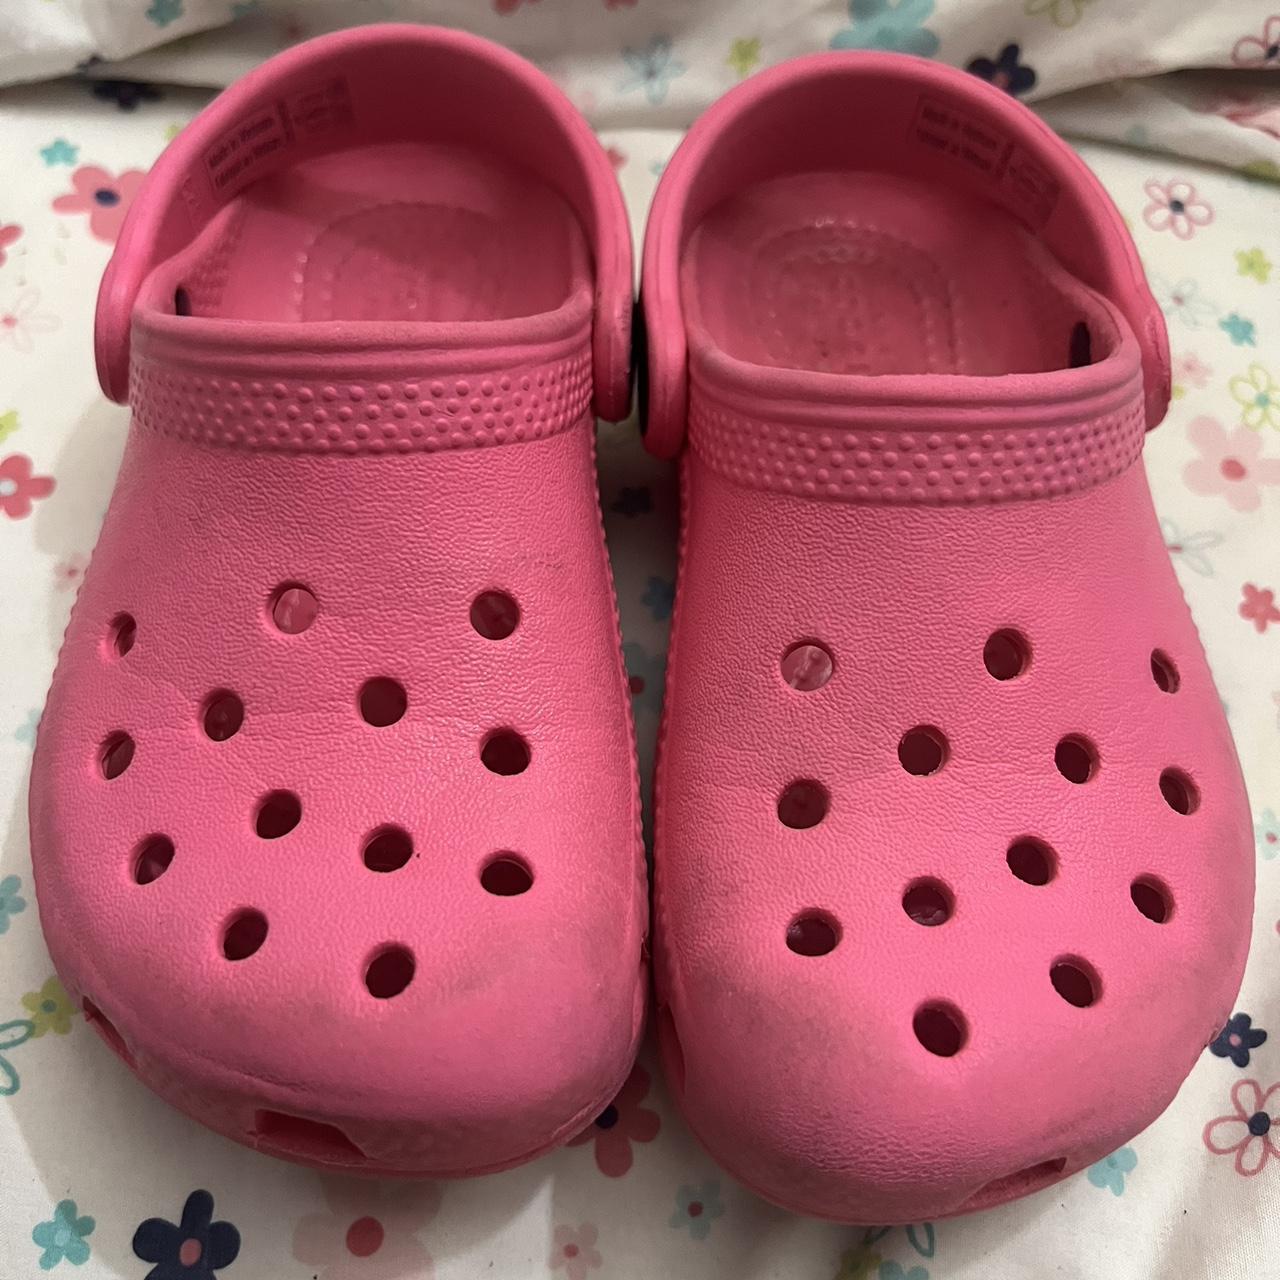 nåde drivhus Om Pink crocs in size C9 little girls - Depop